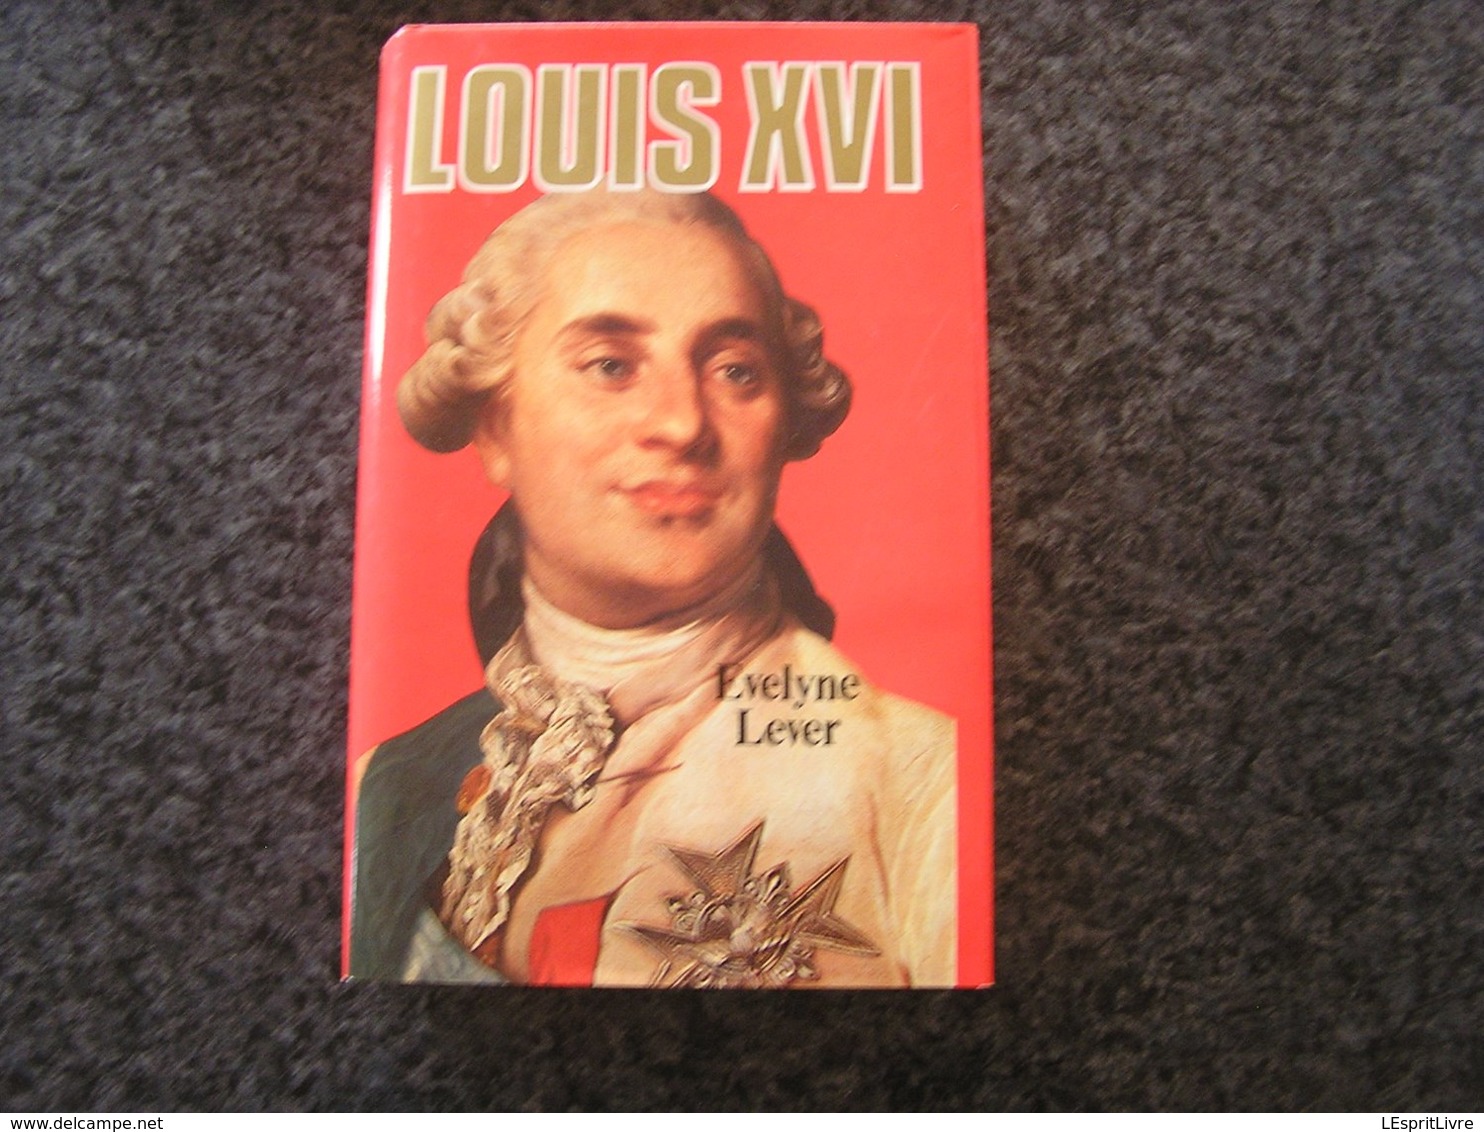 LOUIS XVI Evelyne Lever Histoire Roi Royaume De France Guerre Révolution Monarchie - Geschiedenis